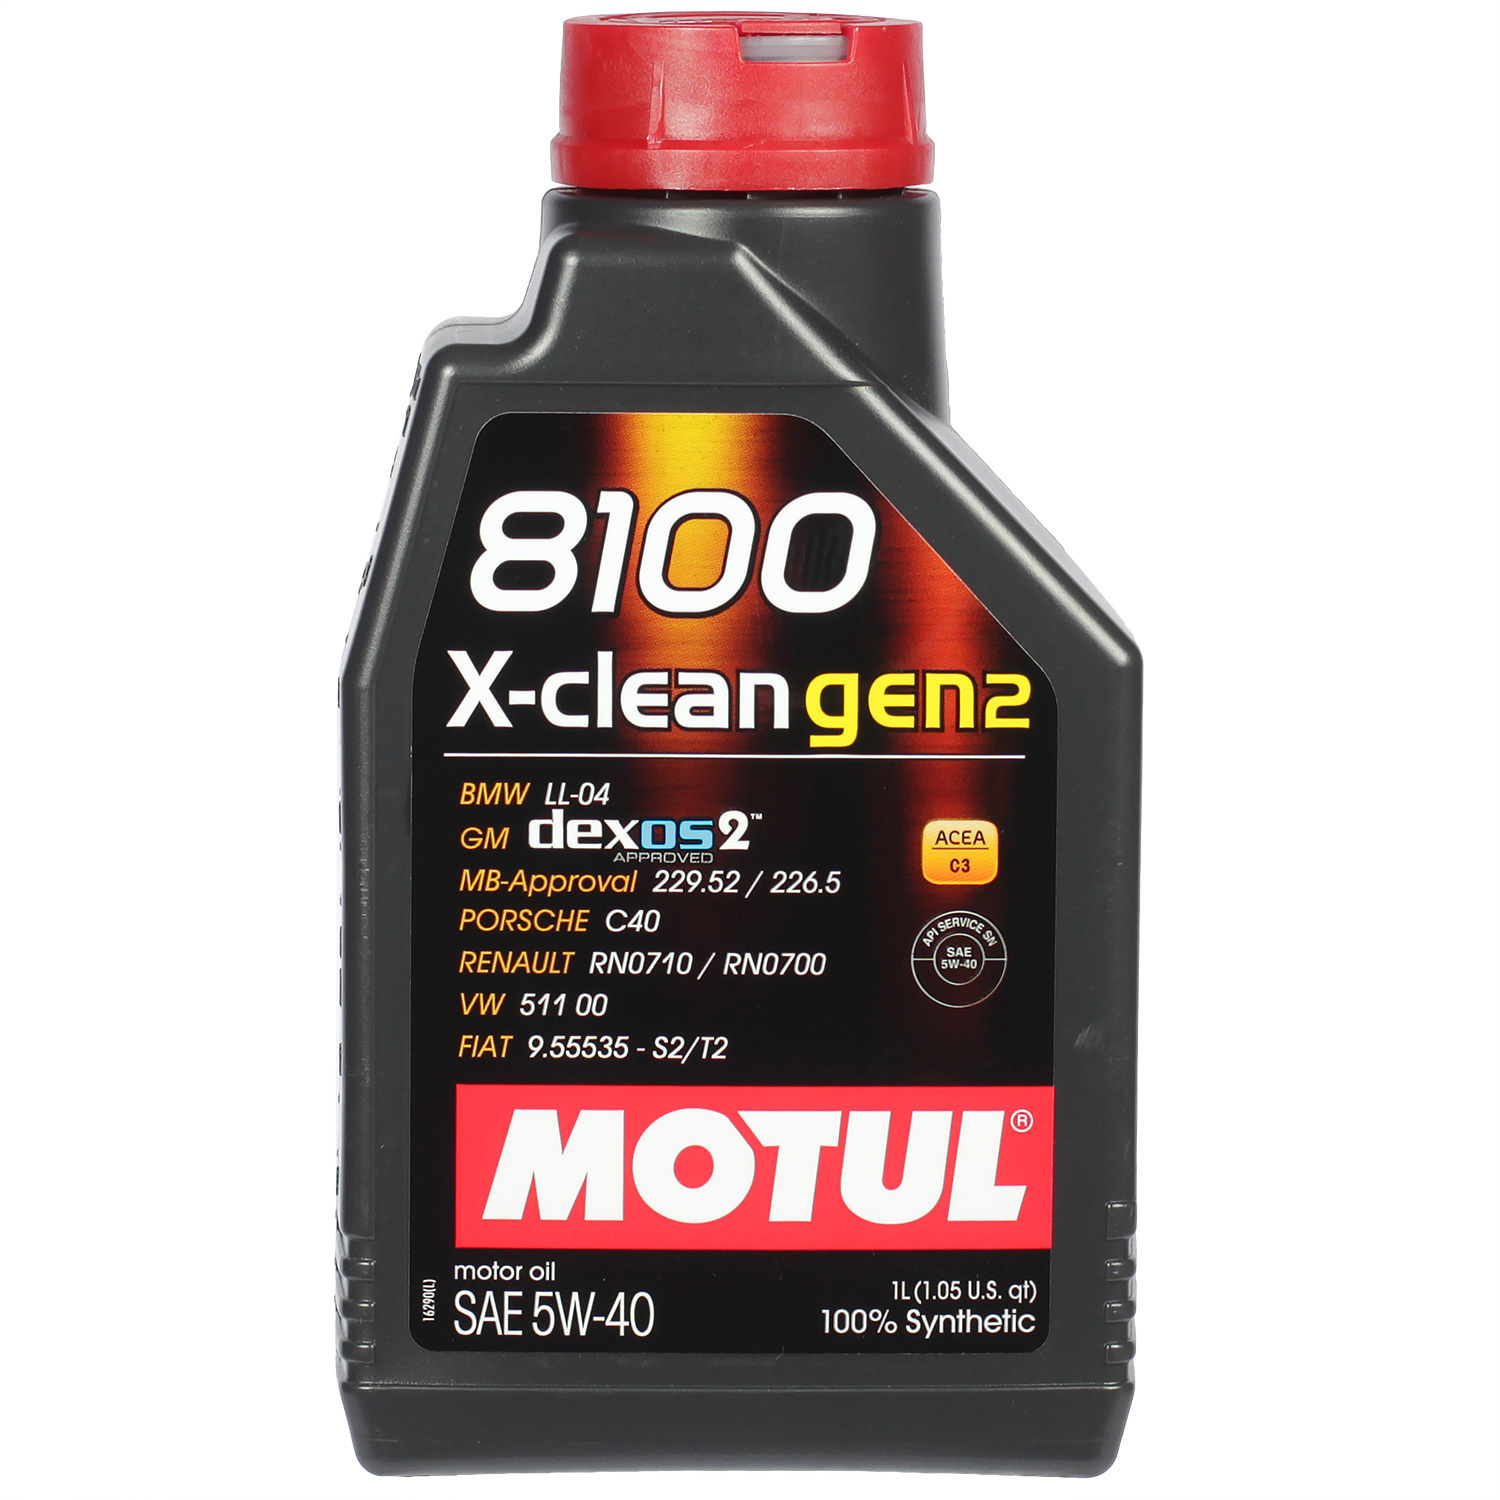 Моторное масло Motul 8100 X-clean gen2 5W-40, 1 л - фото 1